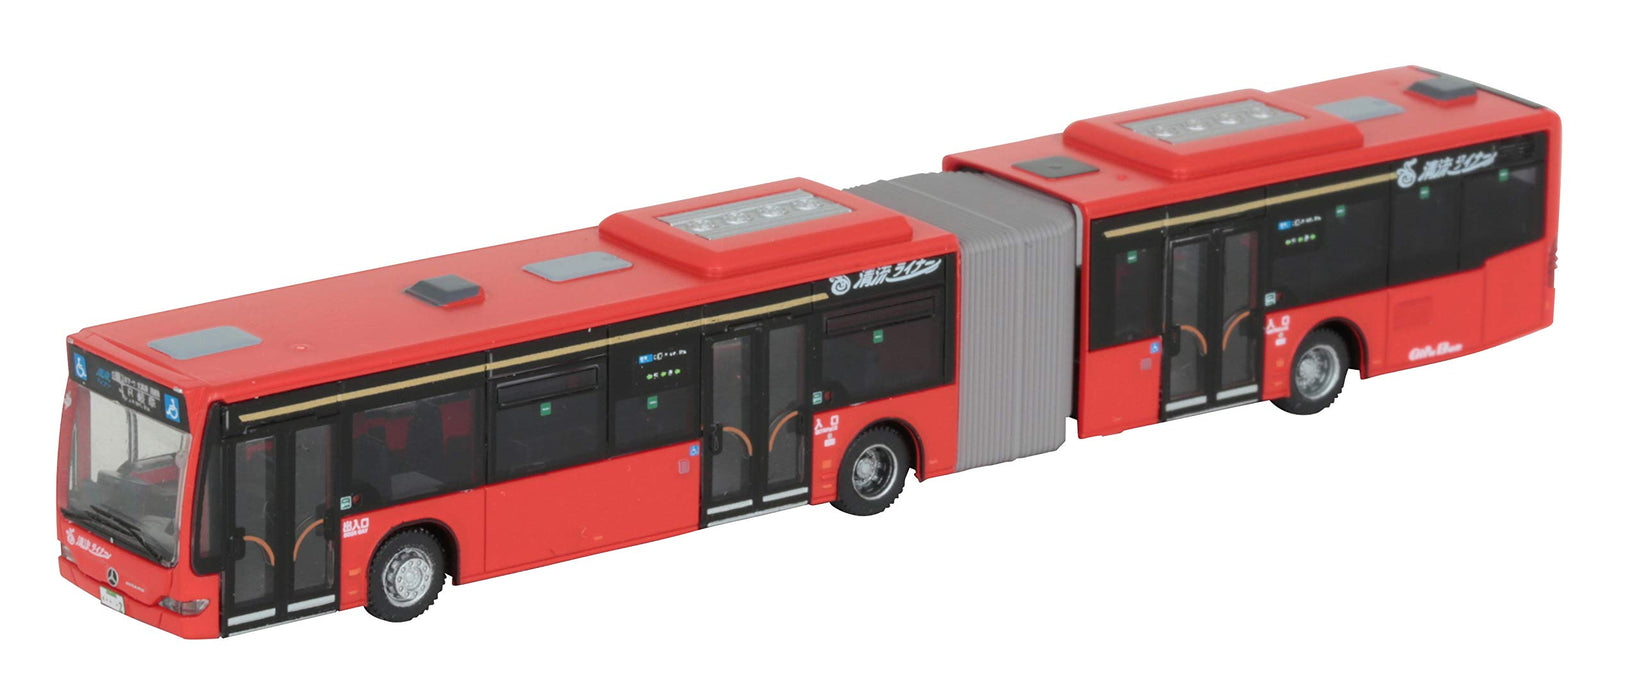 Tomytec Gifu Bus Seiryu Liner – Diorama-Zubehör in limitierter Auflage aus der Bus-Sammlung